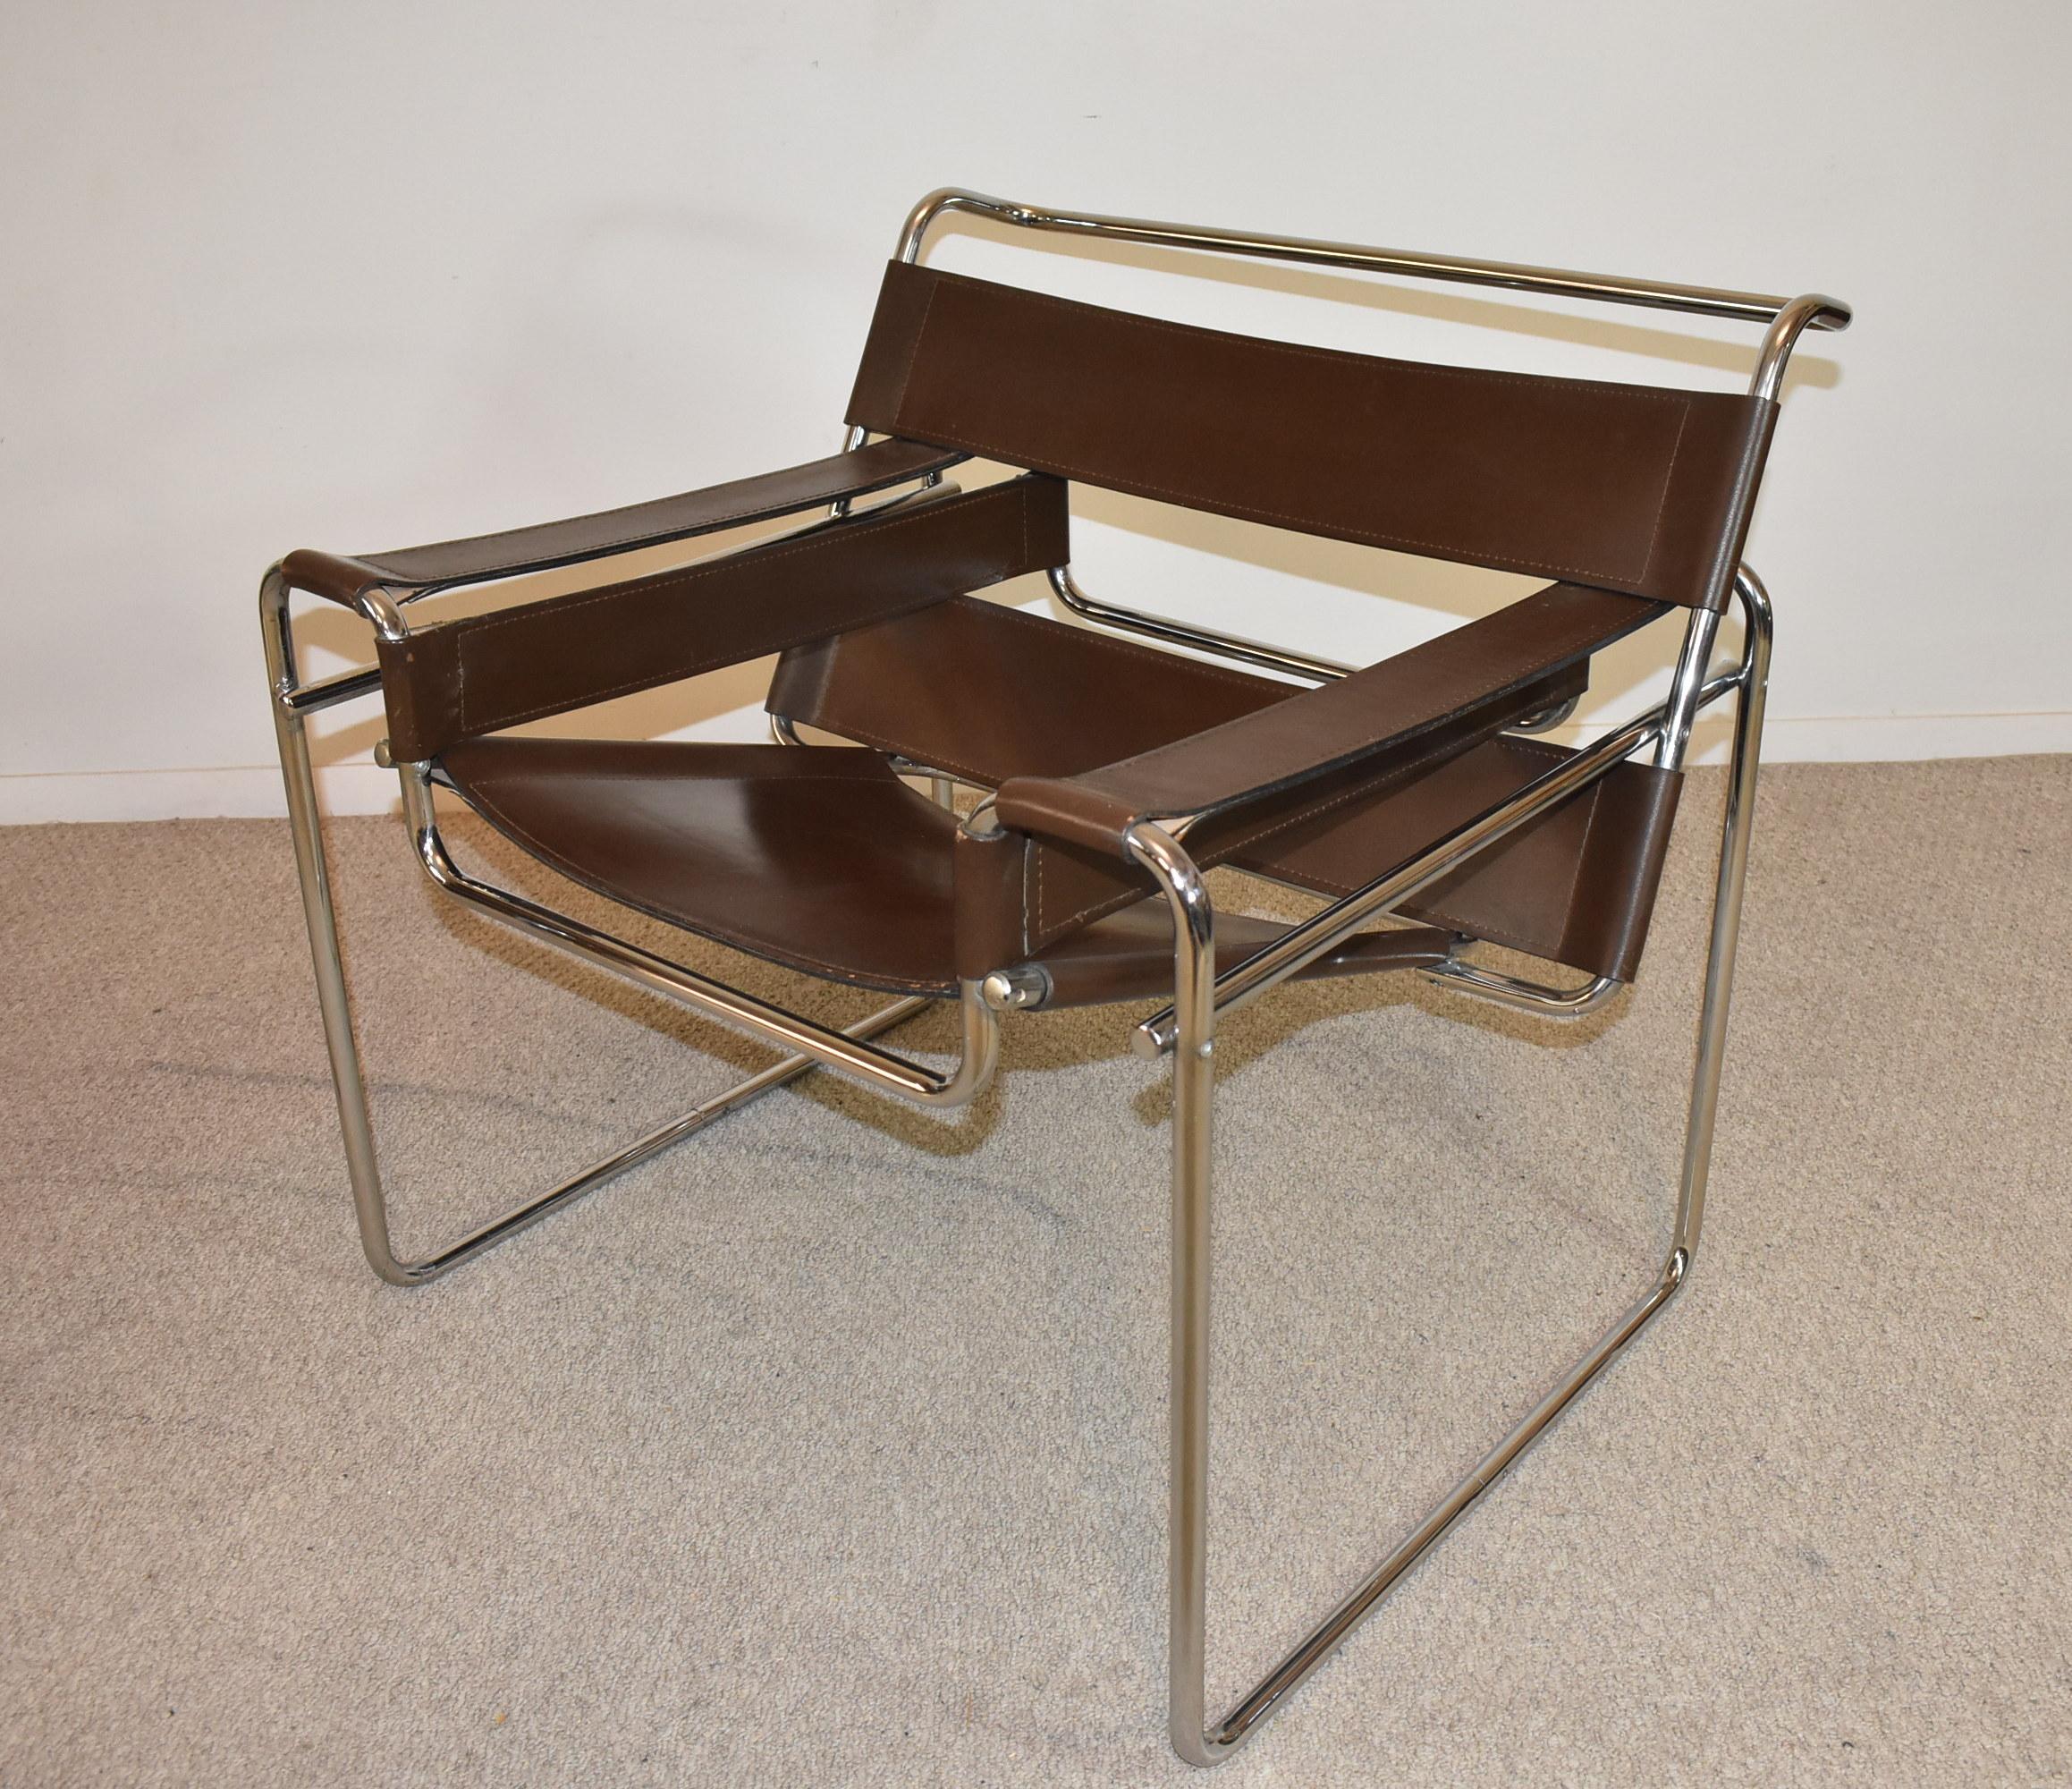 Paire de fauteuils Wassily sling de Knoll en cuir brun et chrome. La chaise Wassily, également connue sous le nom de chaise Design/One, a été conçue par Marcel Breuer en 1925-1926, alors qu'il dirigeait l'atelier d'ébénisterie du Bauhaus, à Dessau,